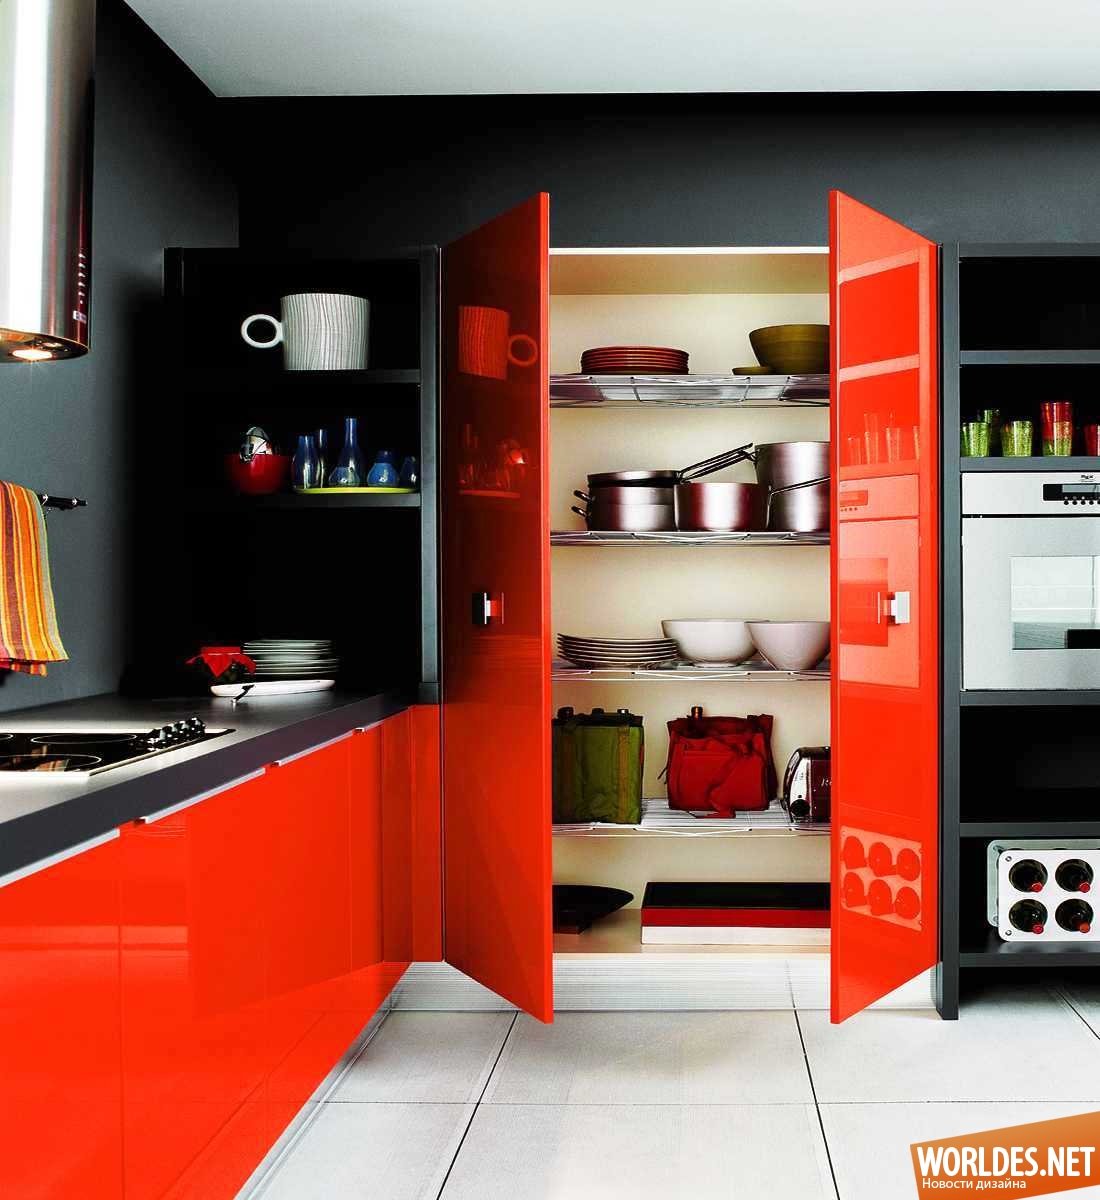 дизайн кухни, оформление кухни, цвет в кухне, современные кухни, яркие кухни, идеи для кухни